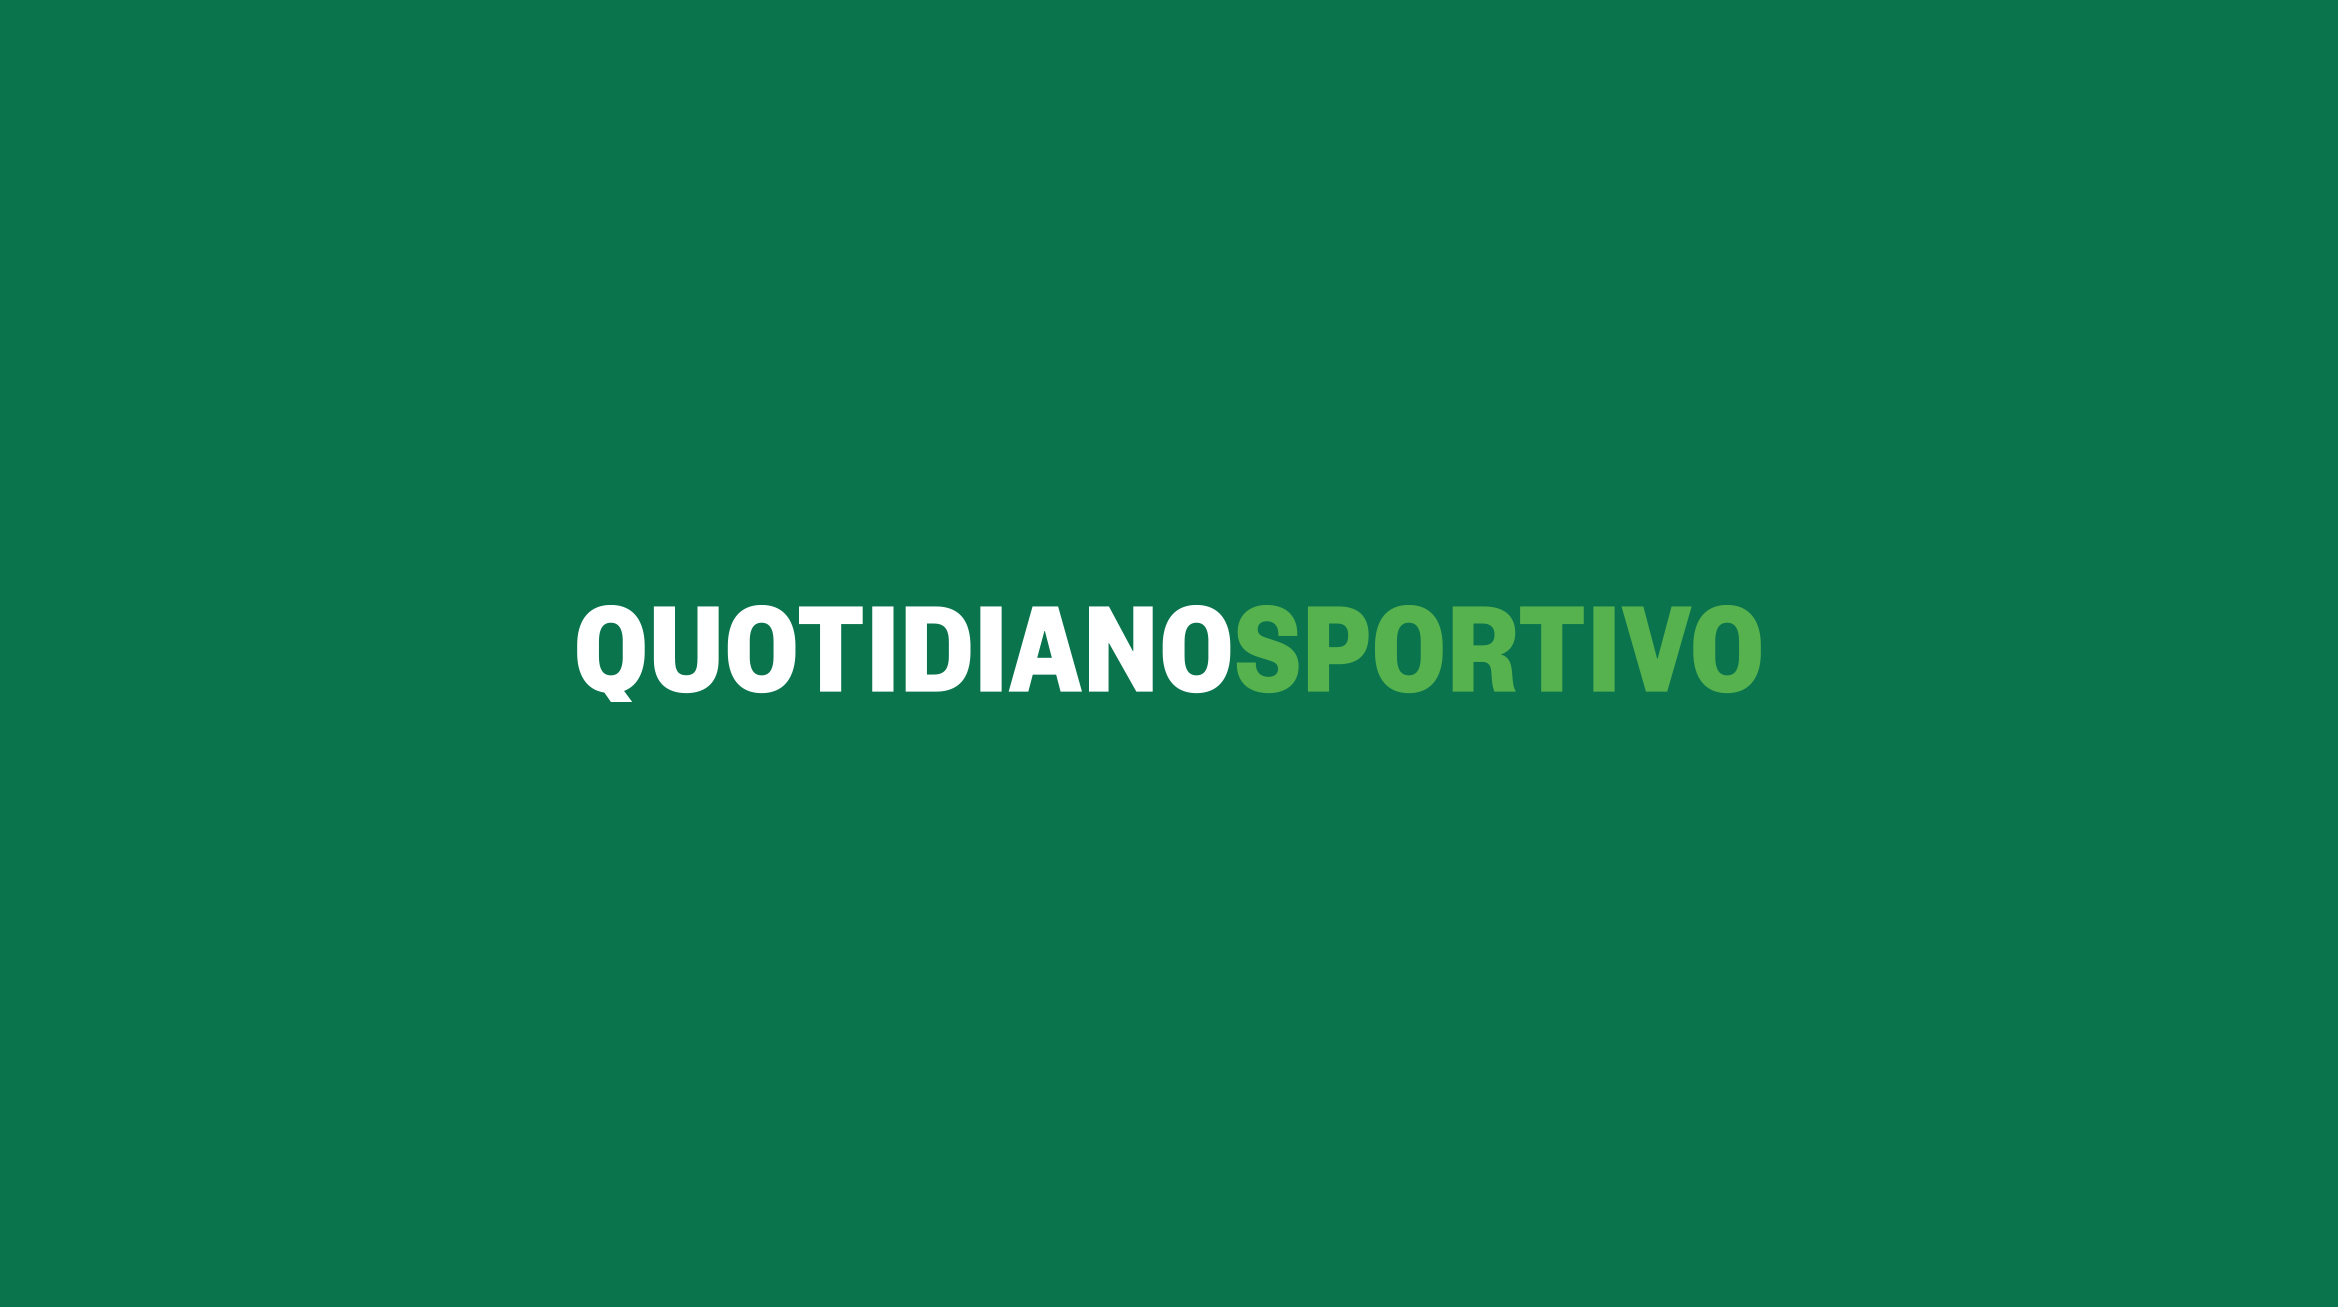 "AC Milan: Tomori pronto al rientro dopo infortunio, buone notizie dall